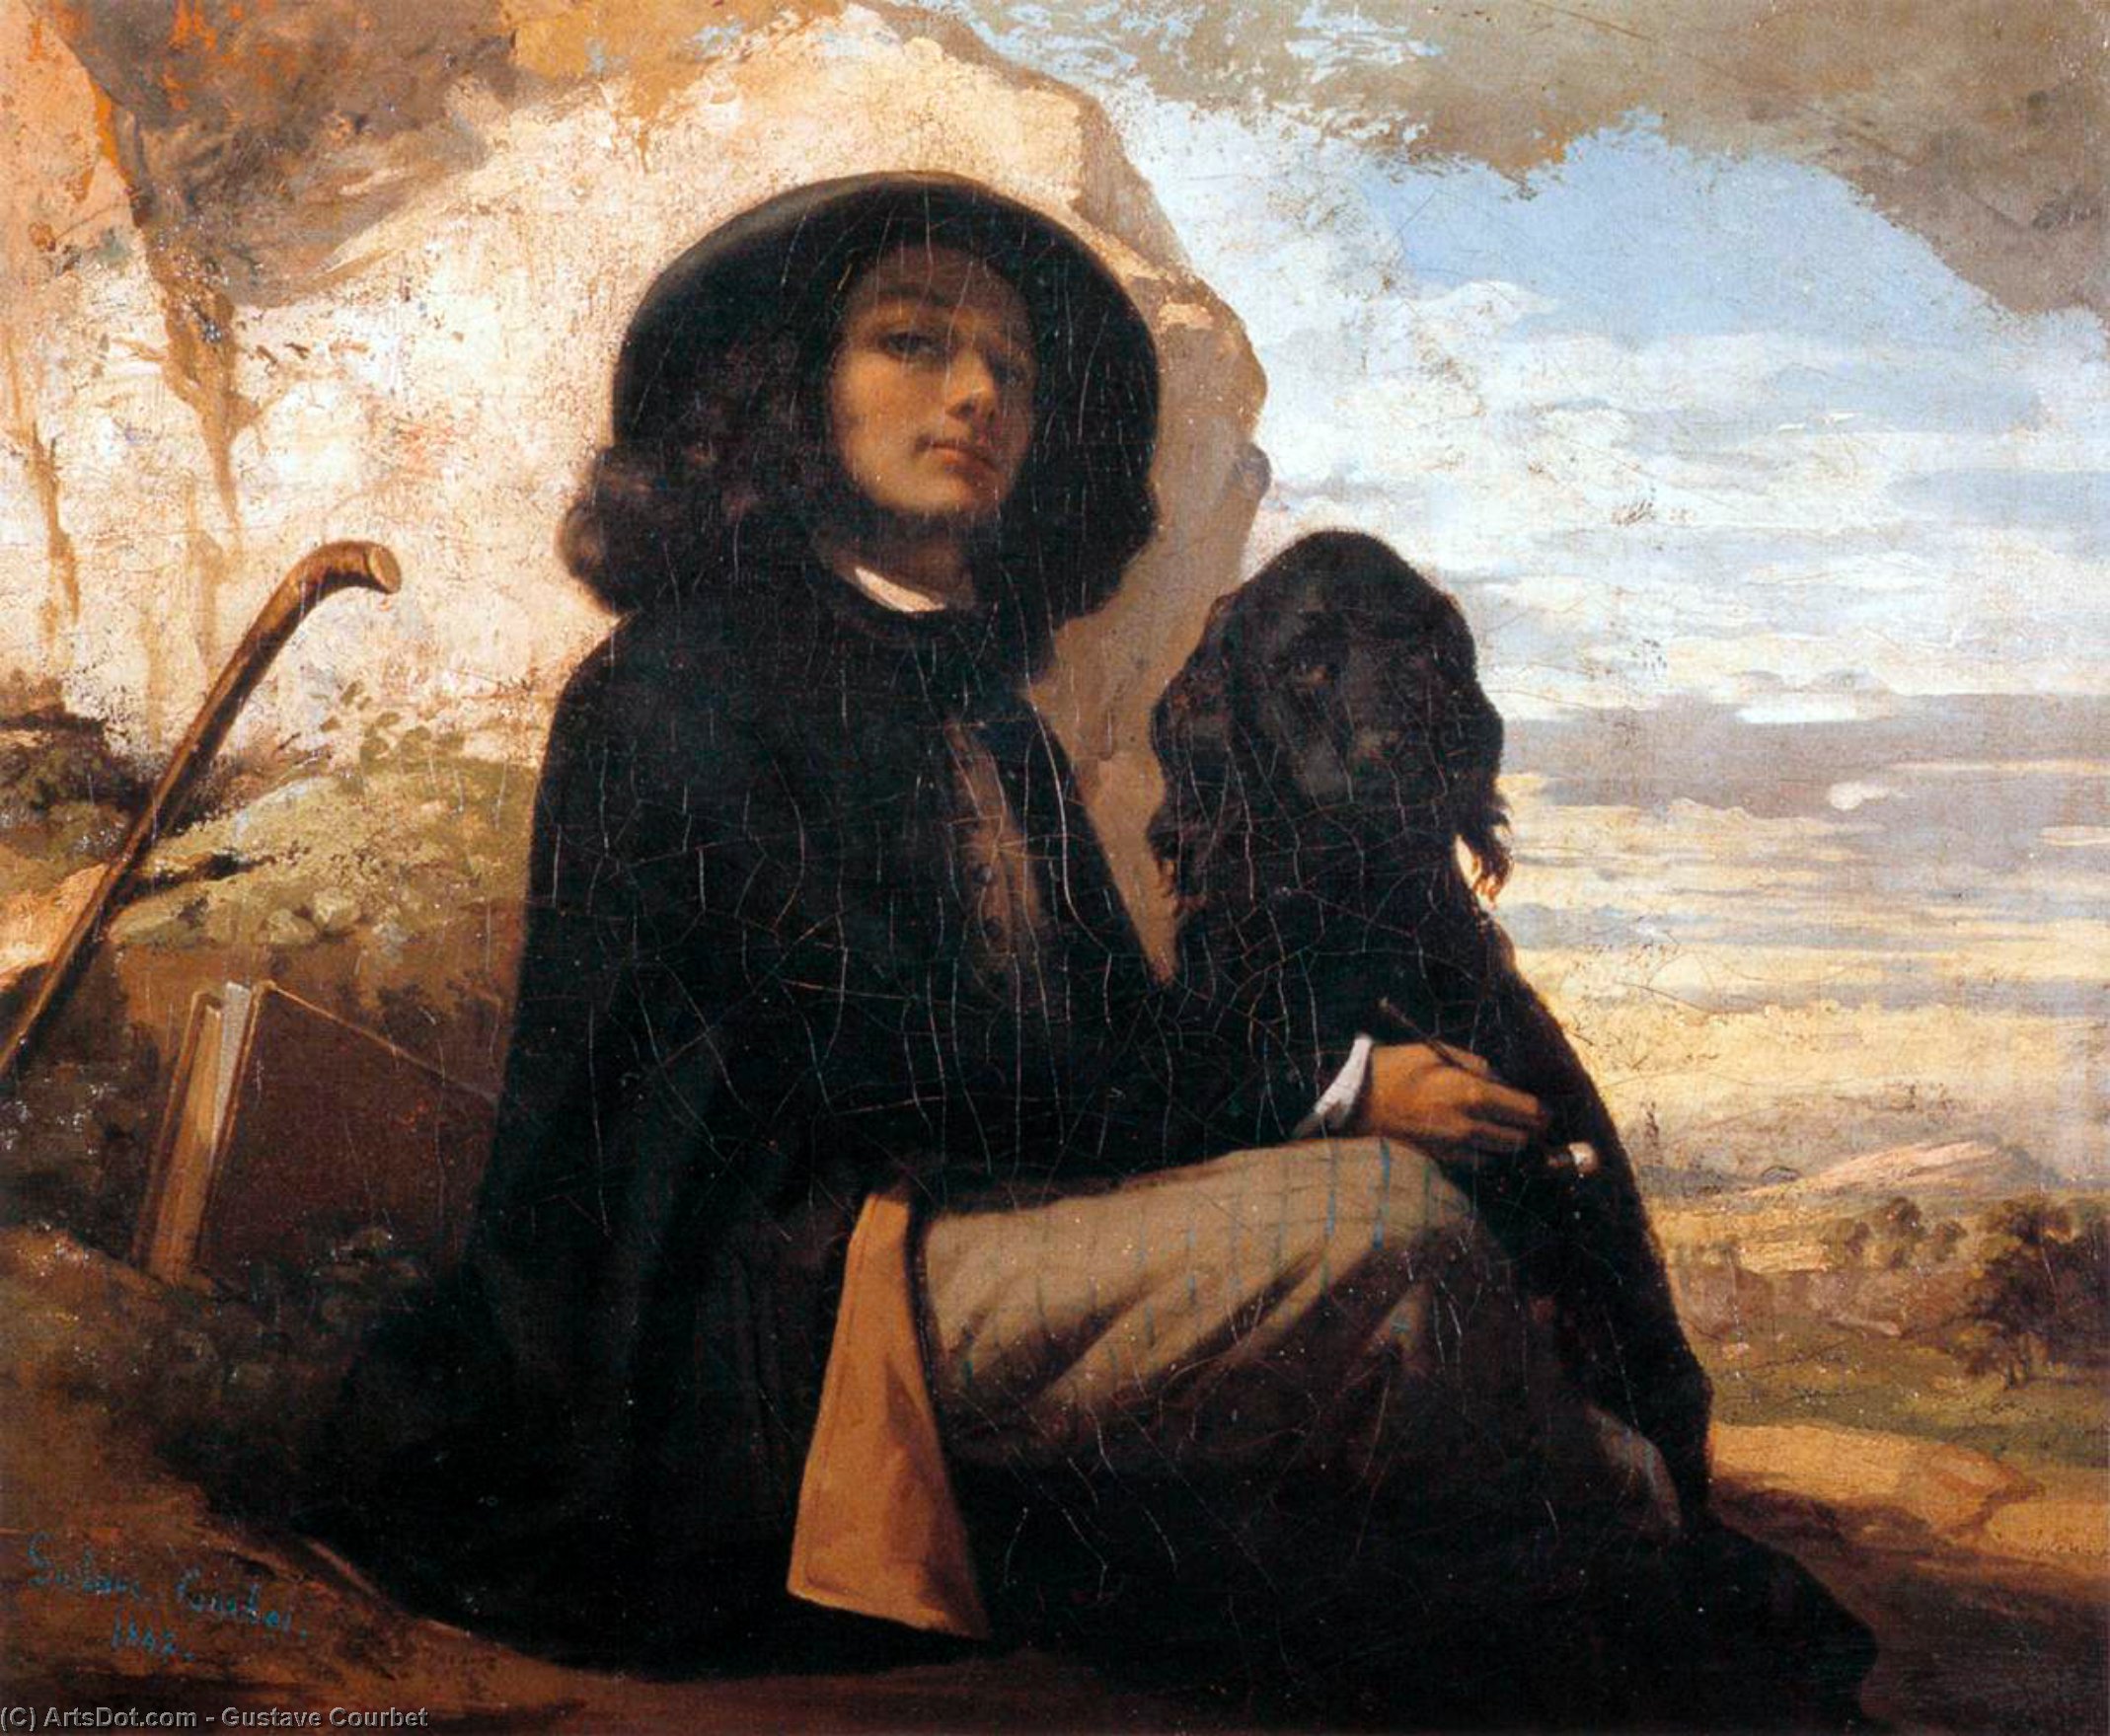 Compra Riproduzioni D'arte Del Museo Autoritratto con un cane nero, 1841 di Gustave Courbet (1819-1877, France) | ArtsDot.com